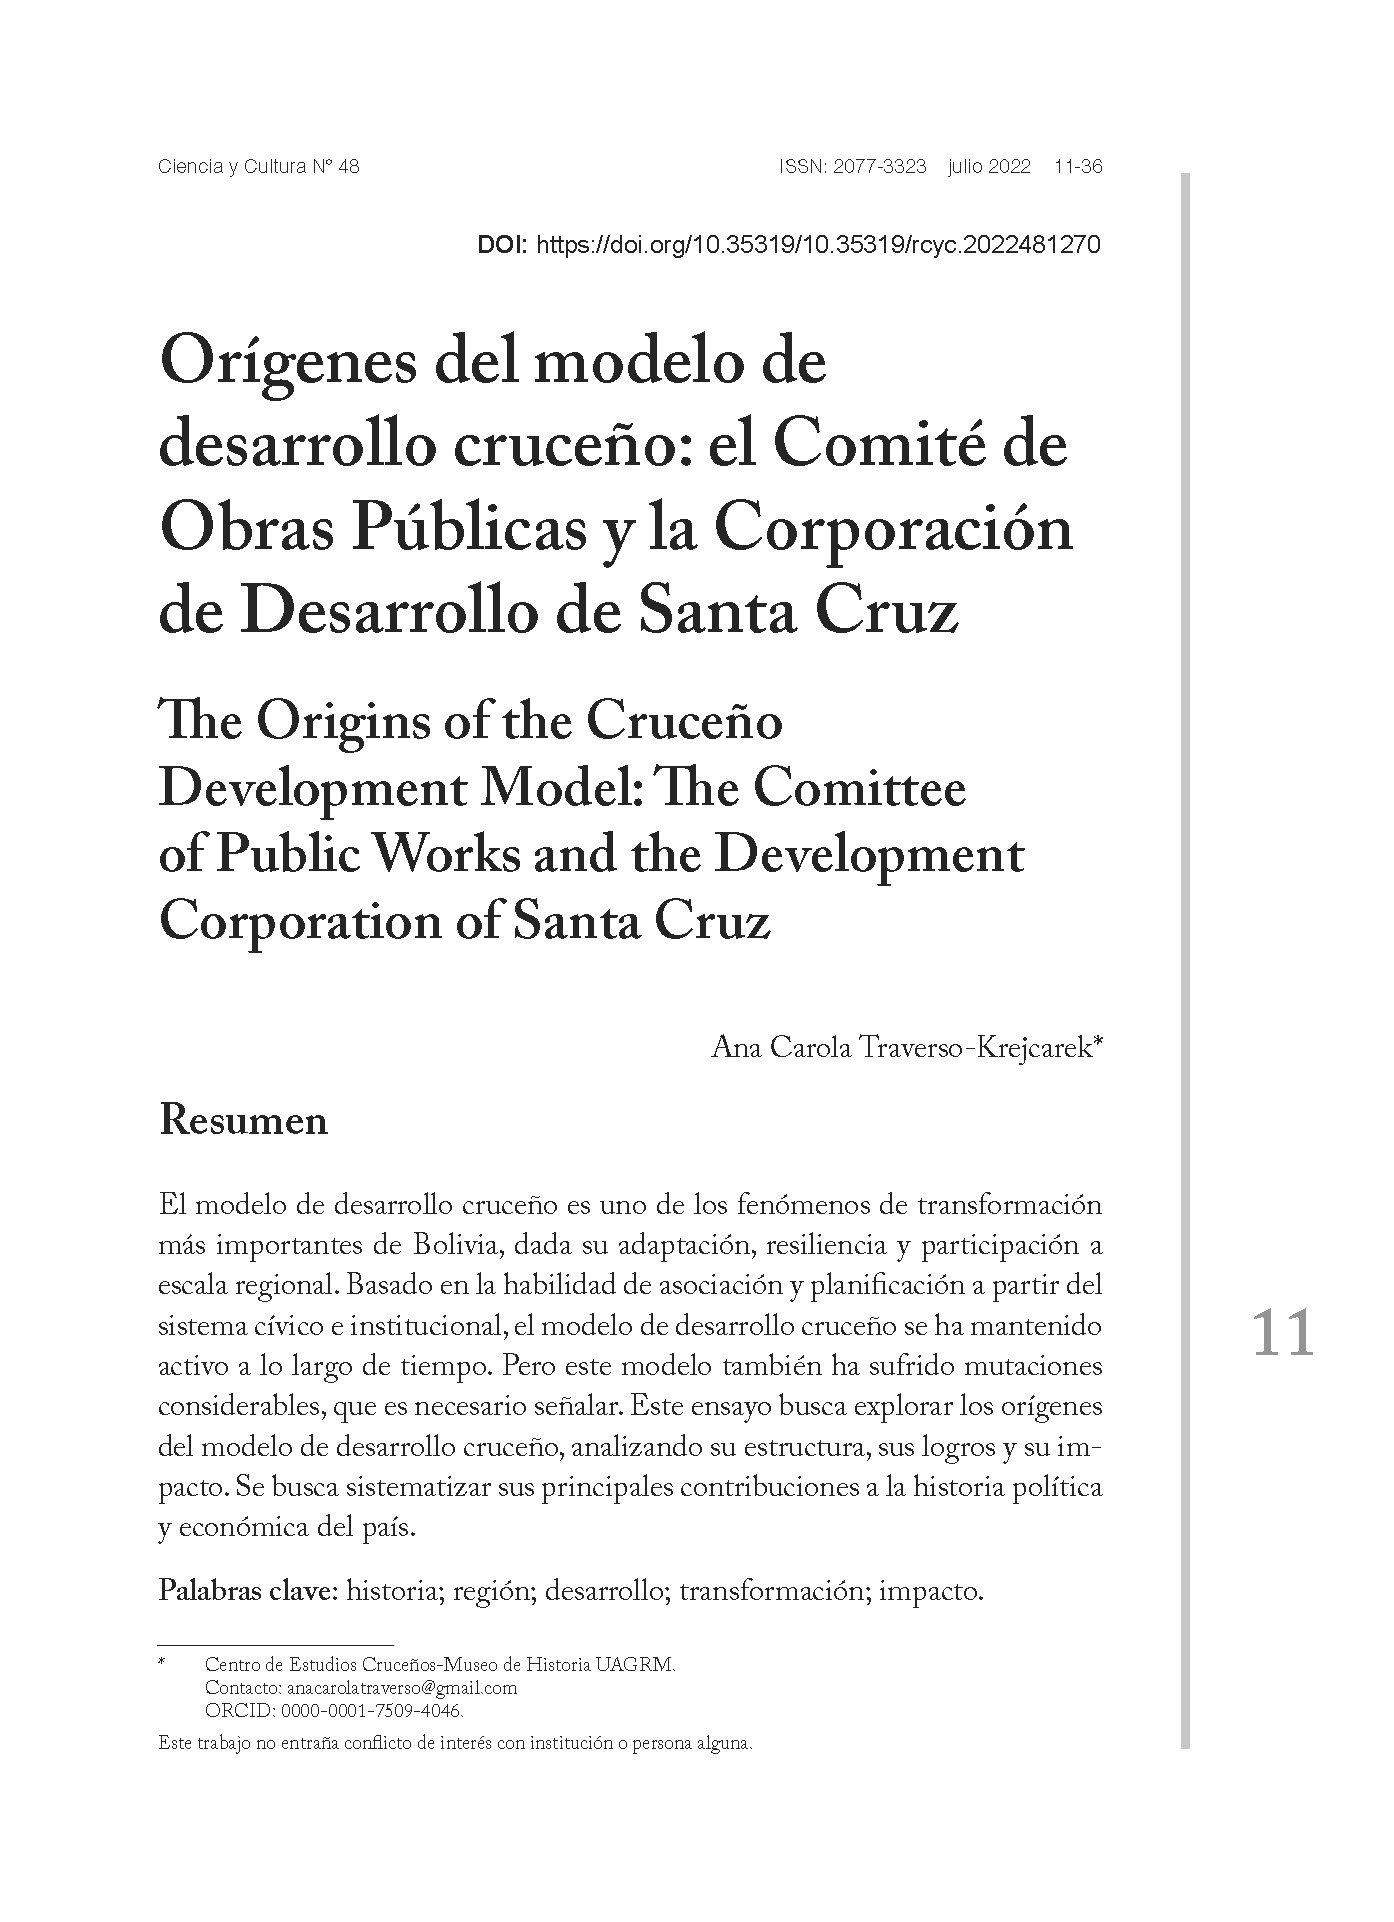 Orígenes del modelo de desarrollo cruceño: el Comité de Obras Públicas y la Corporación de Desarrollo de Santa Cruz